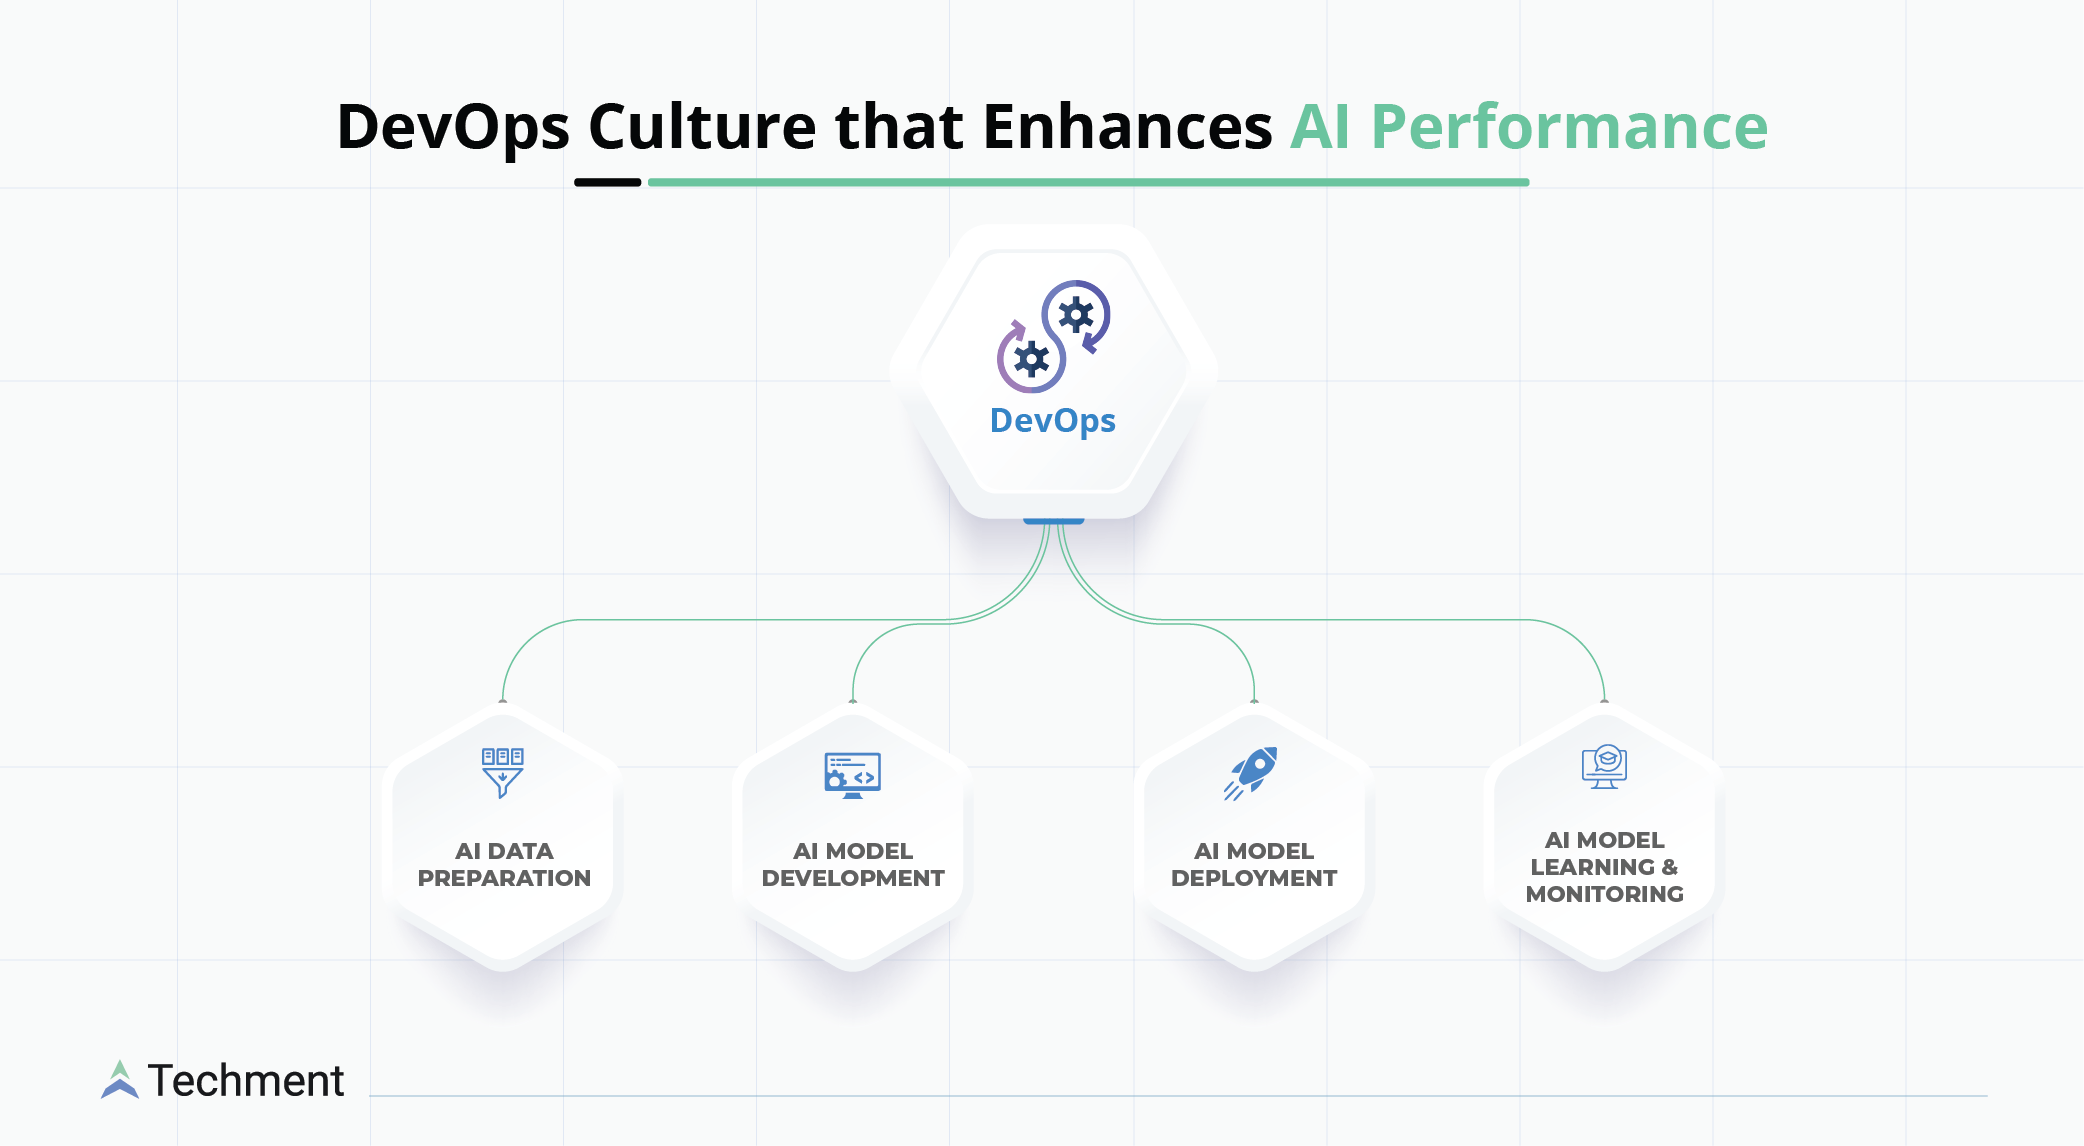 DevOps Culture that Enhances AI Performance